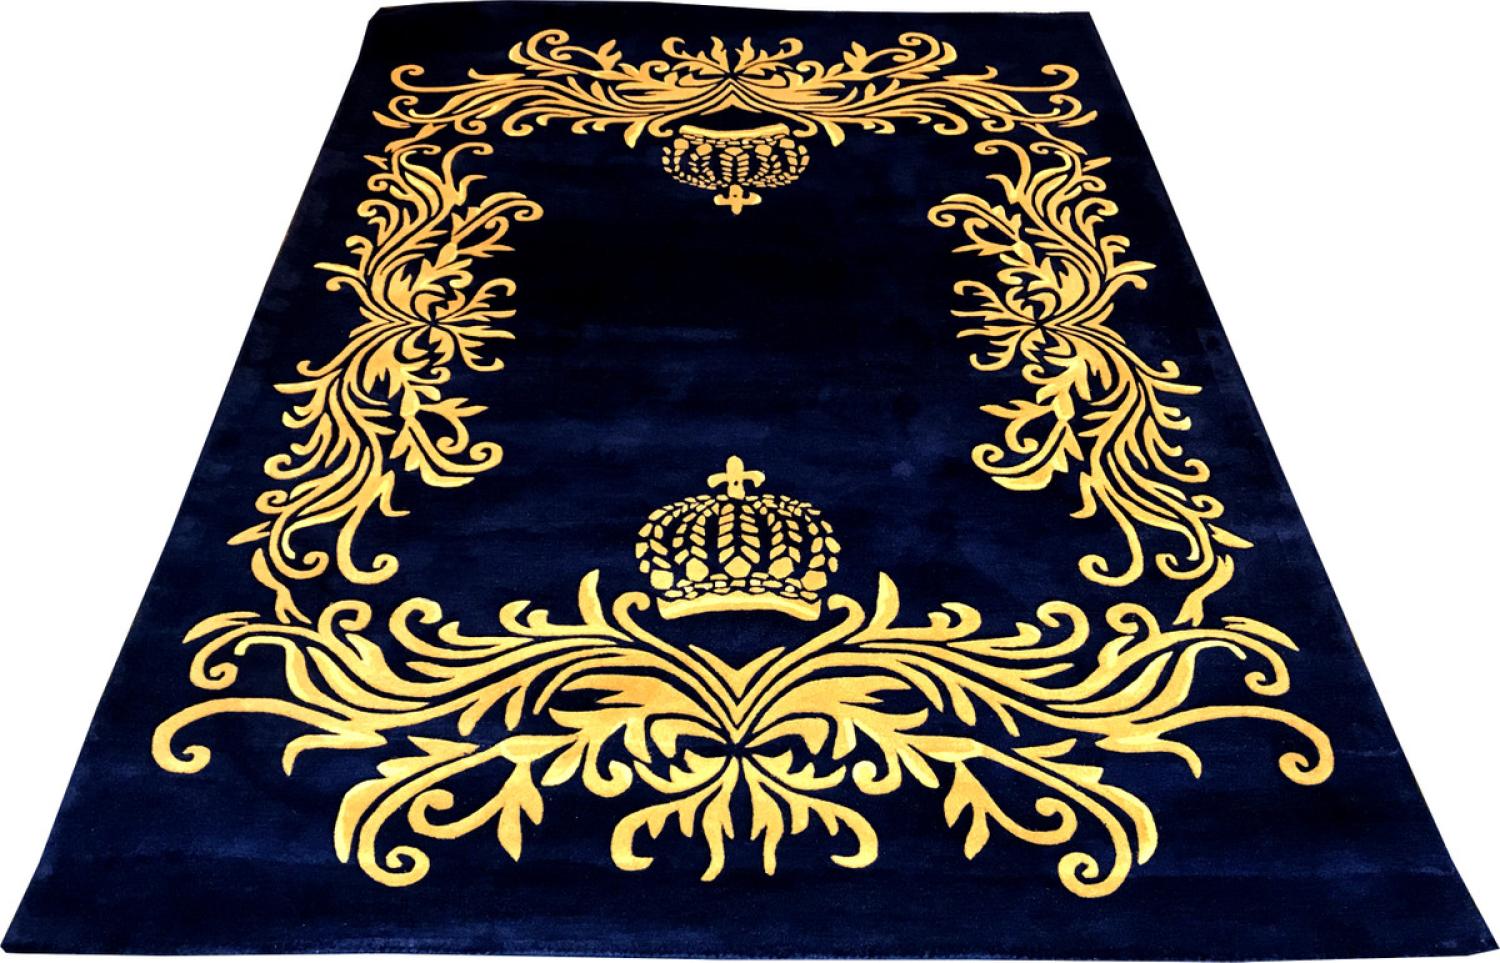 Pompöös by Casa Padrino Luxus Teppich von Harald Glööckler 200 x 290 cm Krone Royalblau / Gold - Barock Design Teppich - Handgewebt aus Wolle Bild 1